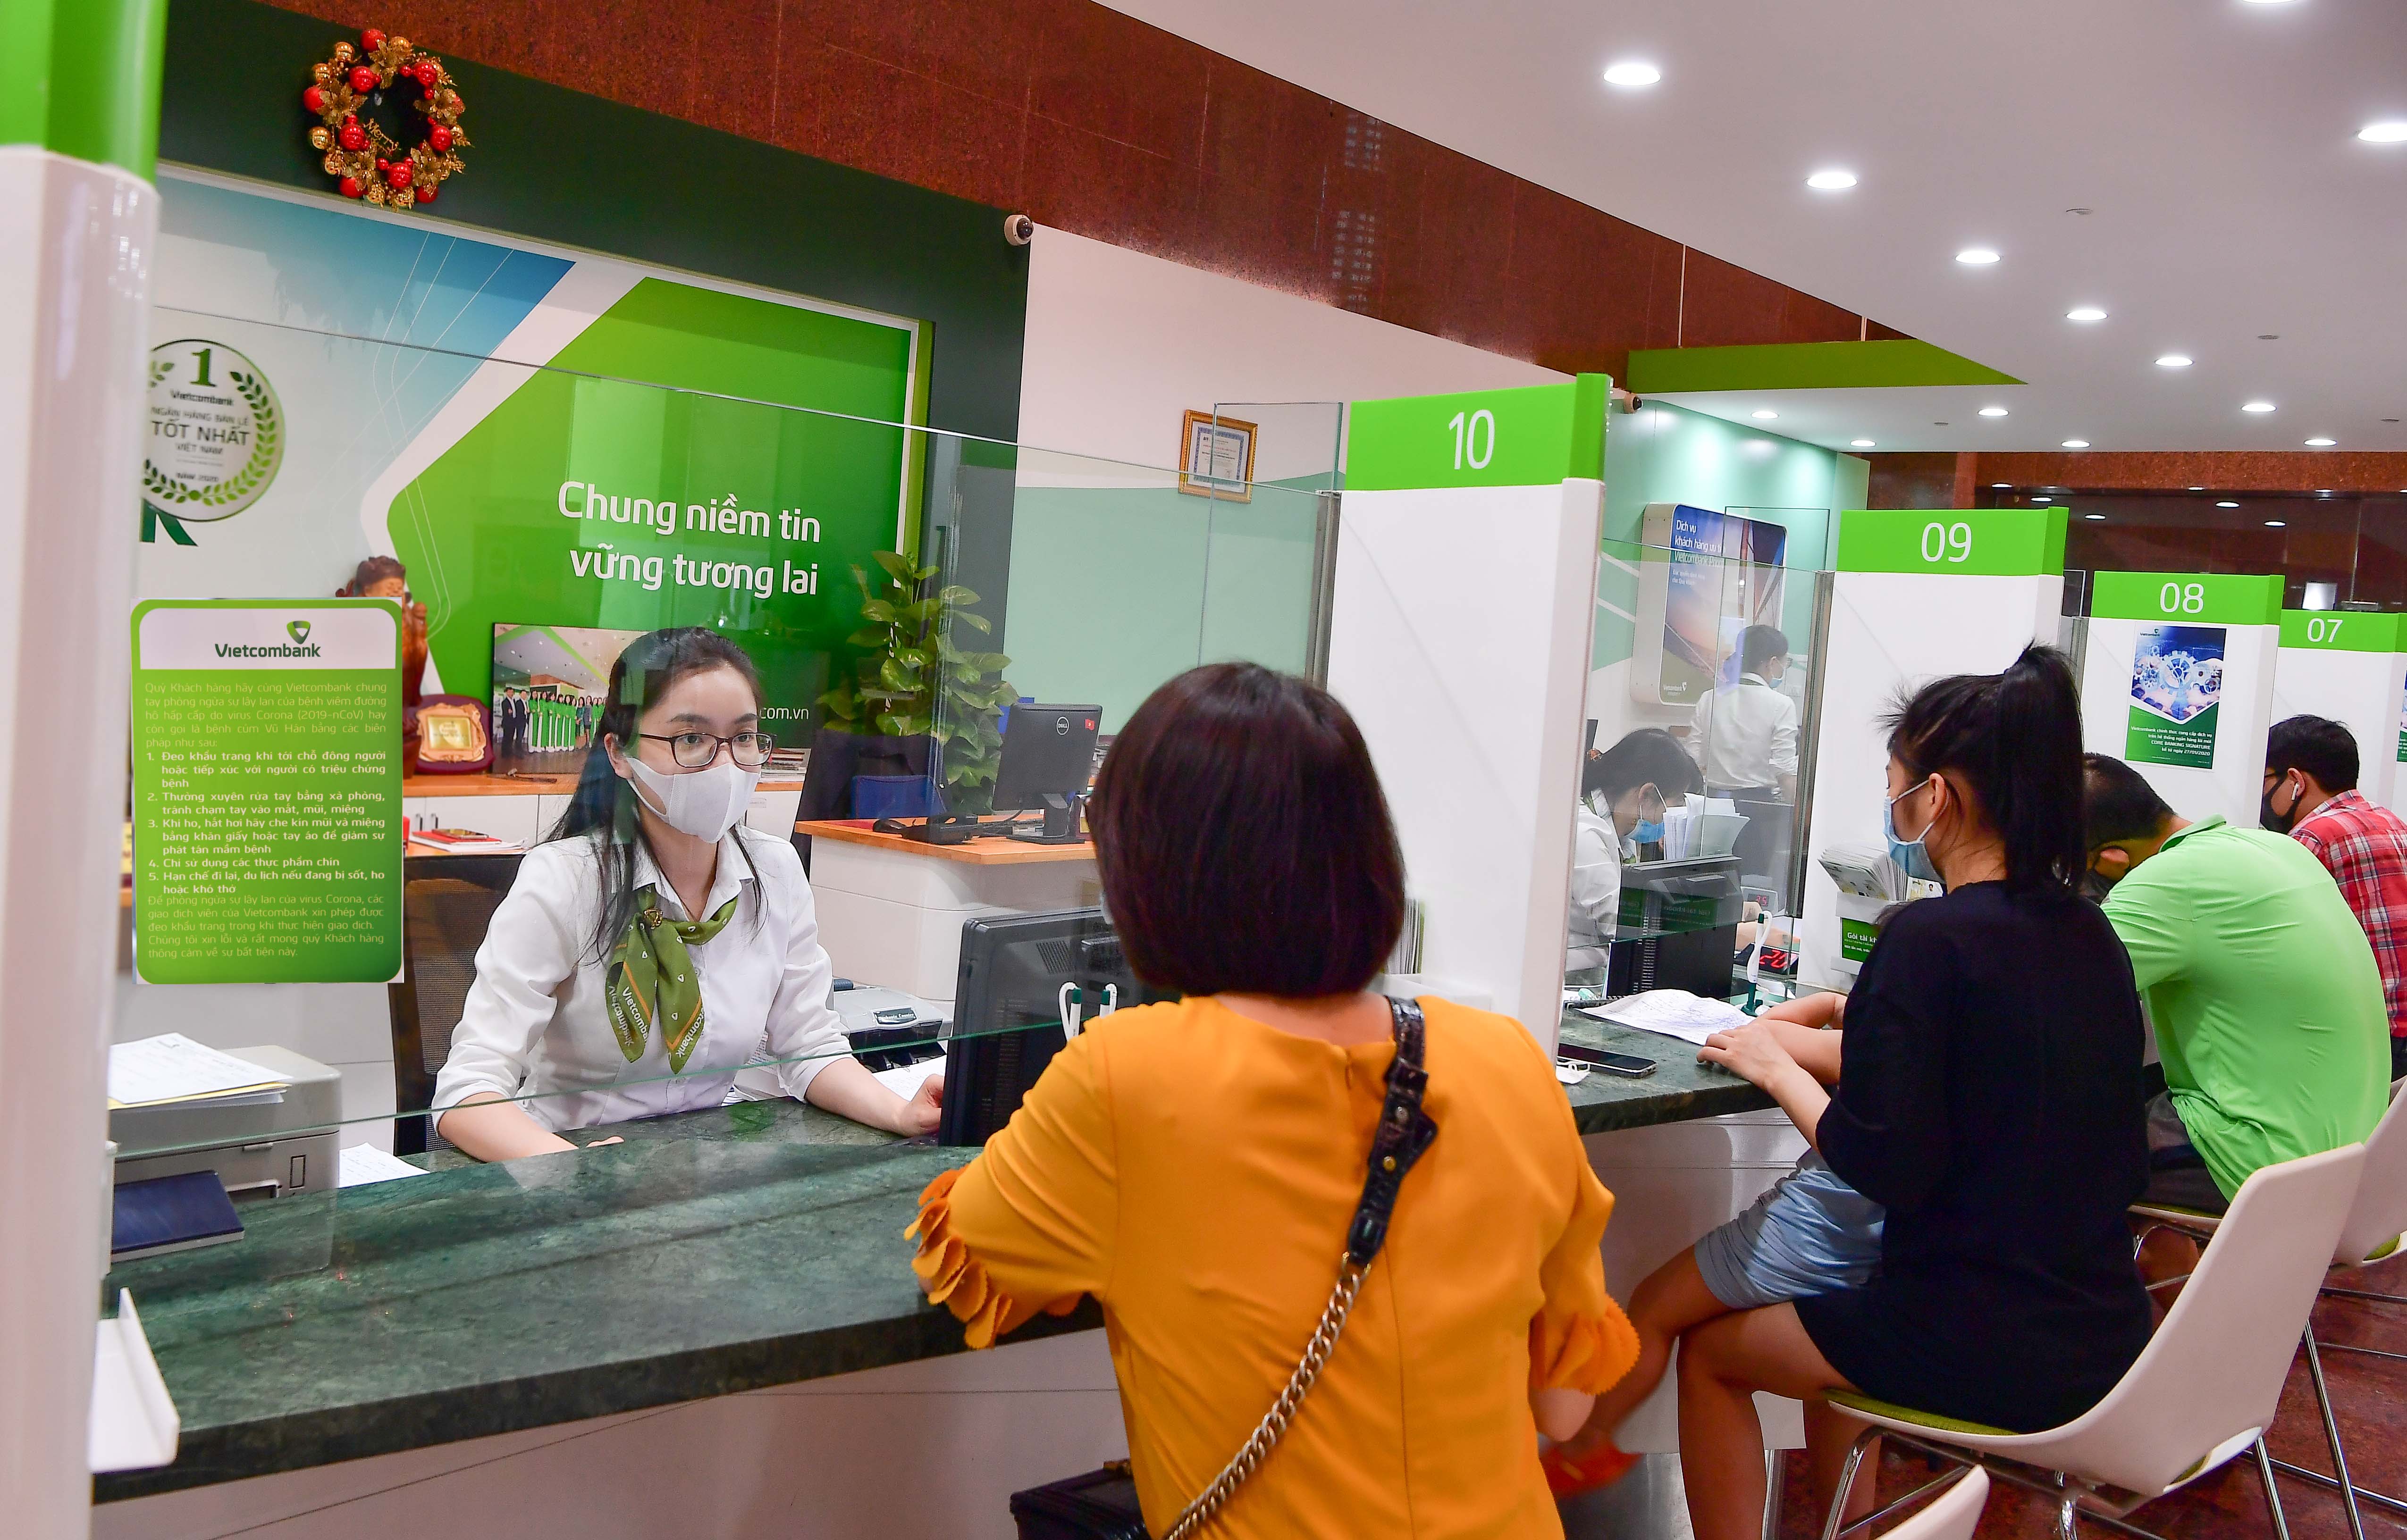 Vietcombank giảm lãi suất tiền vay và phí để hỗ trợ khách hàng bị ảnh hưởng bởi đại dịch Covid-19 tại địa bàn tỉnh Bắc Giang và Bắc Ninh